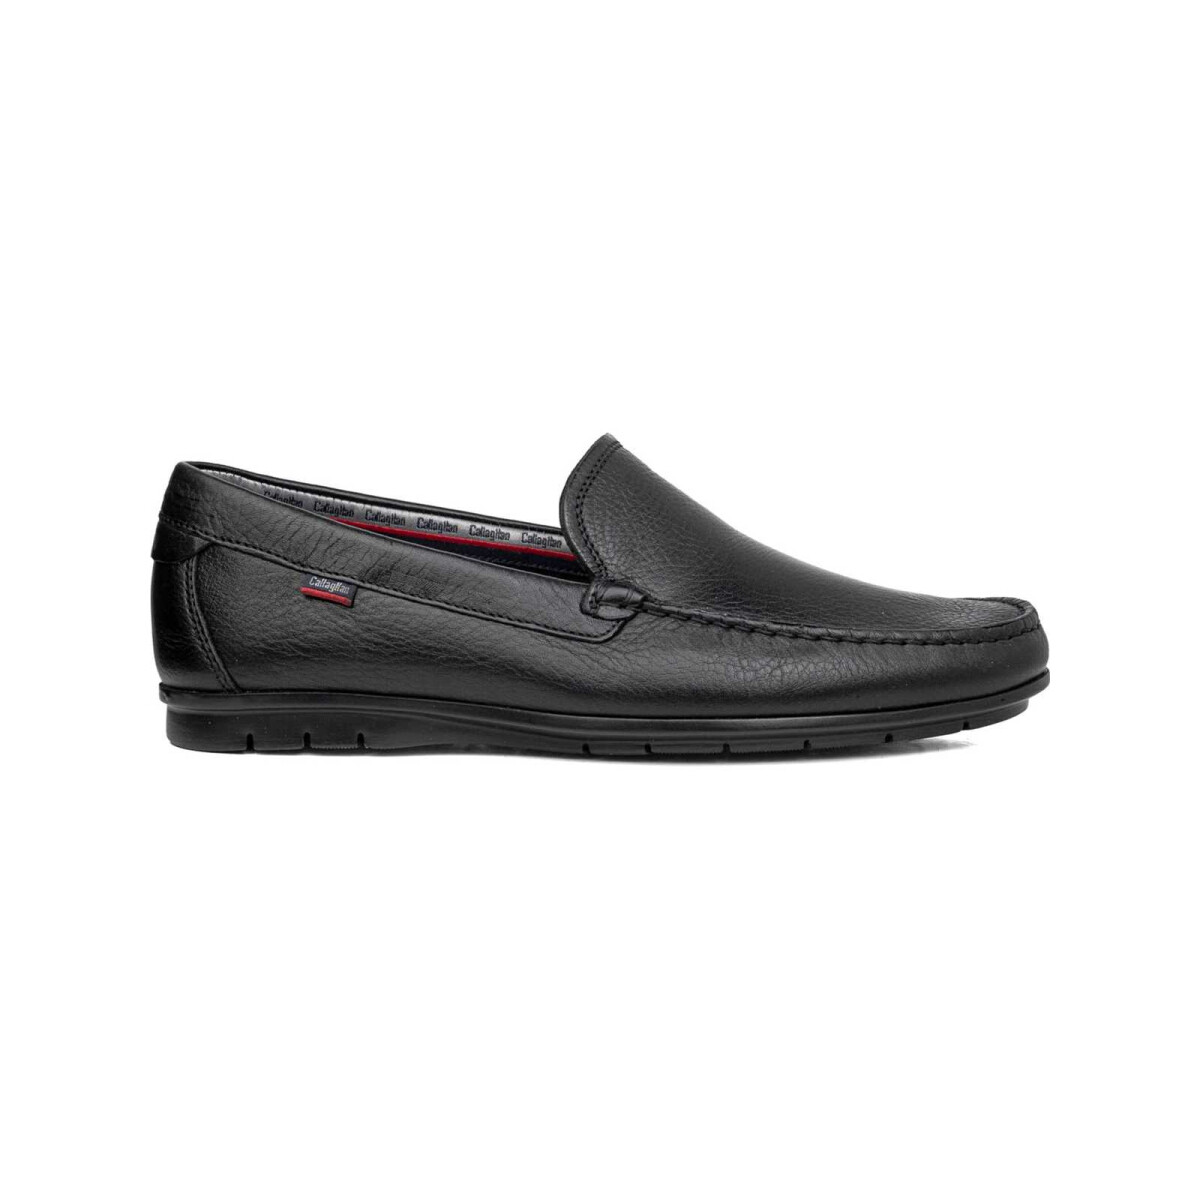 Chaussures Homme Mocassins CallagHan 85100-43107 Noir